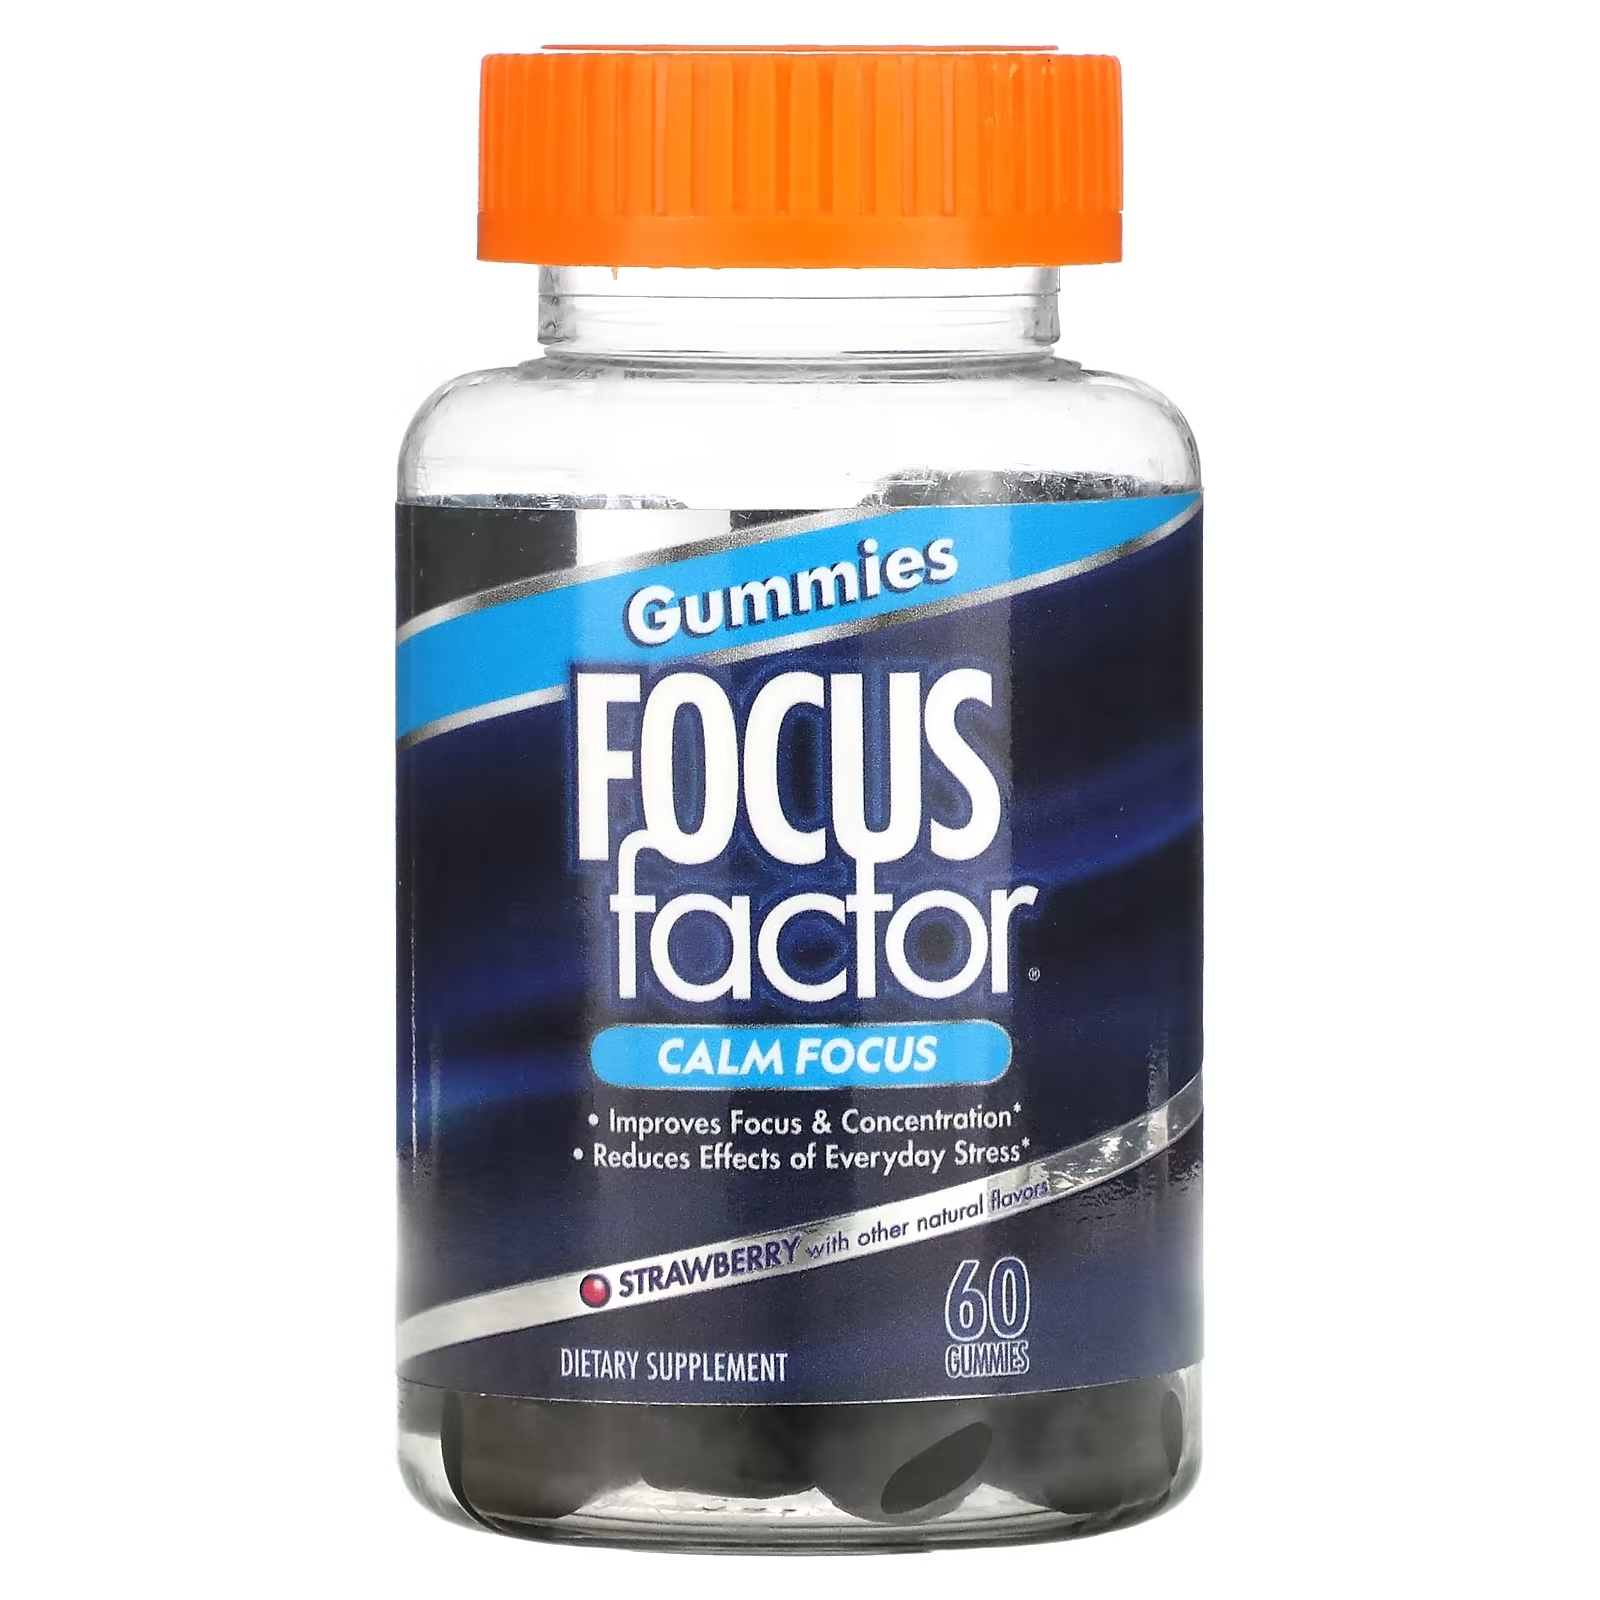 Focus Factor Calm Focus клубника, 60 жевательных таблеток focus factor kids extra strength berry blast 120 жевательных таблеток